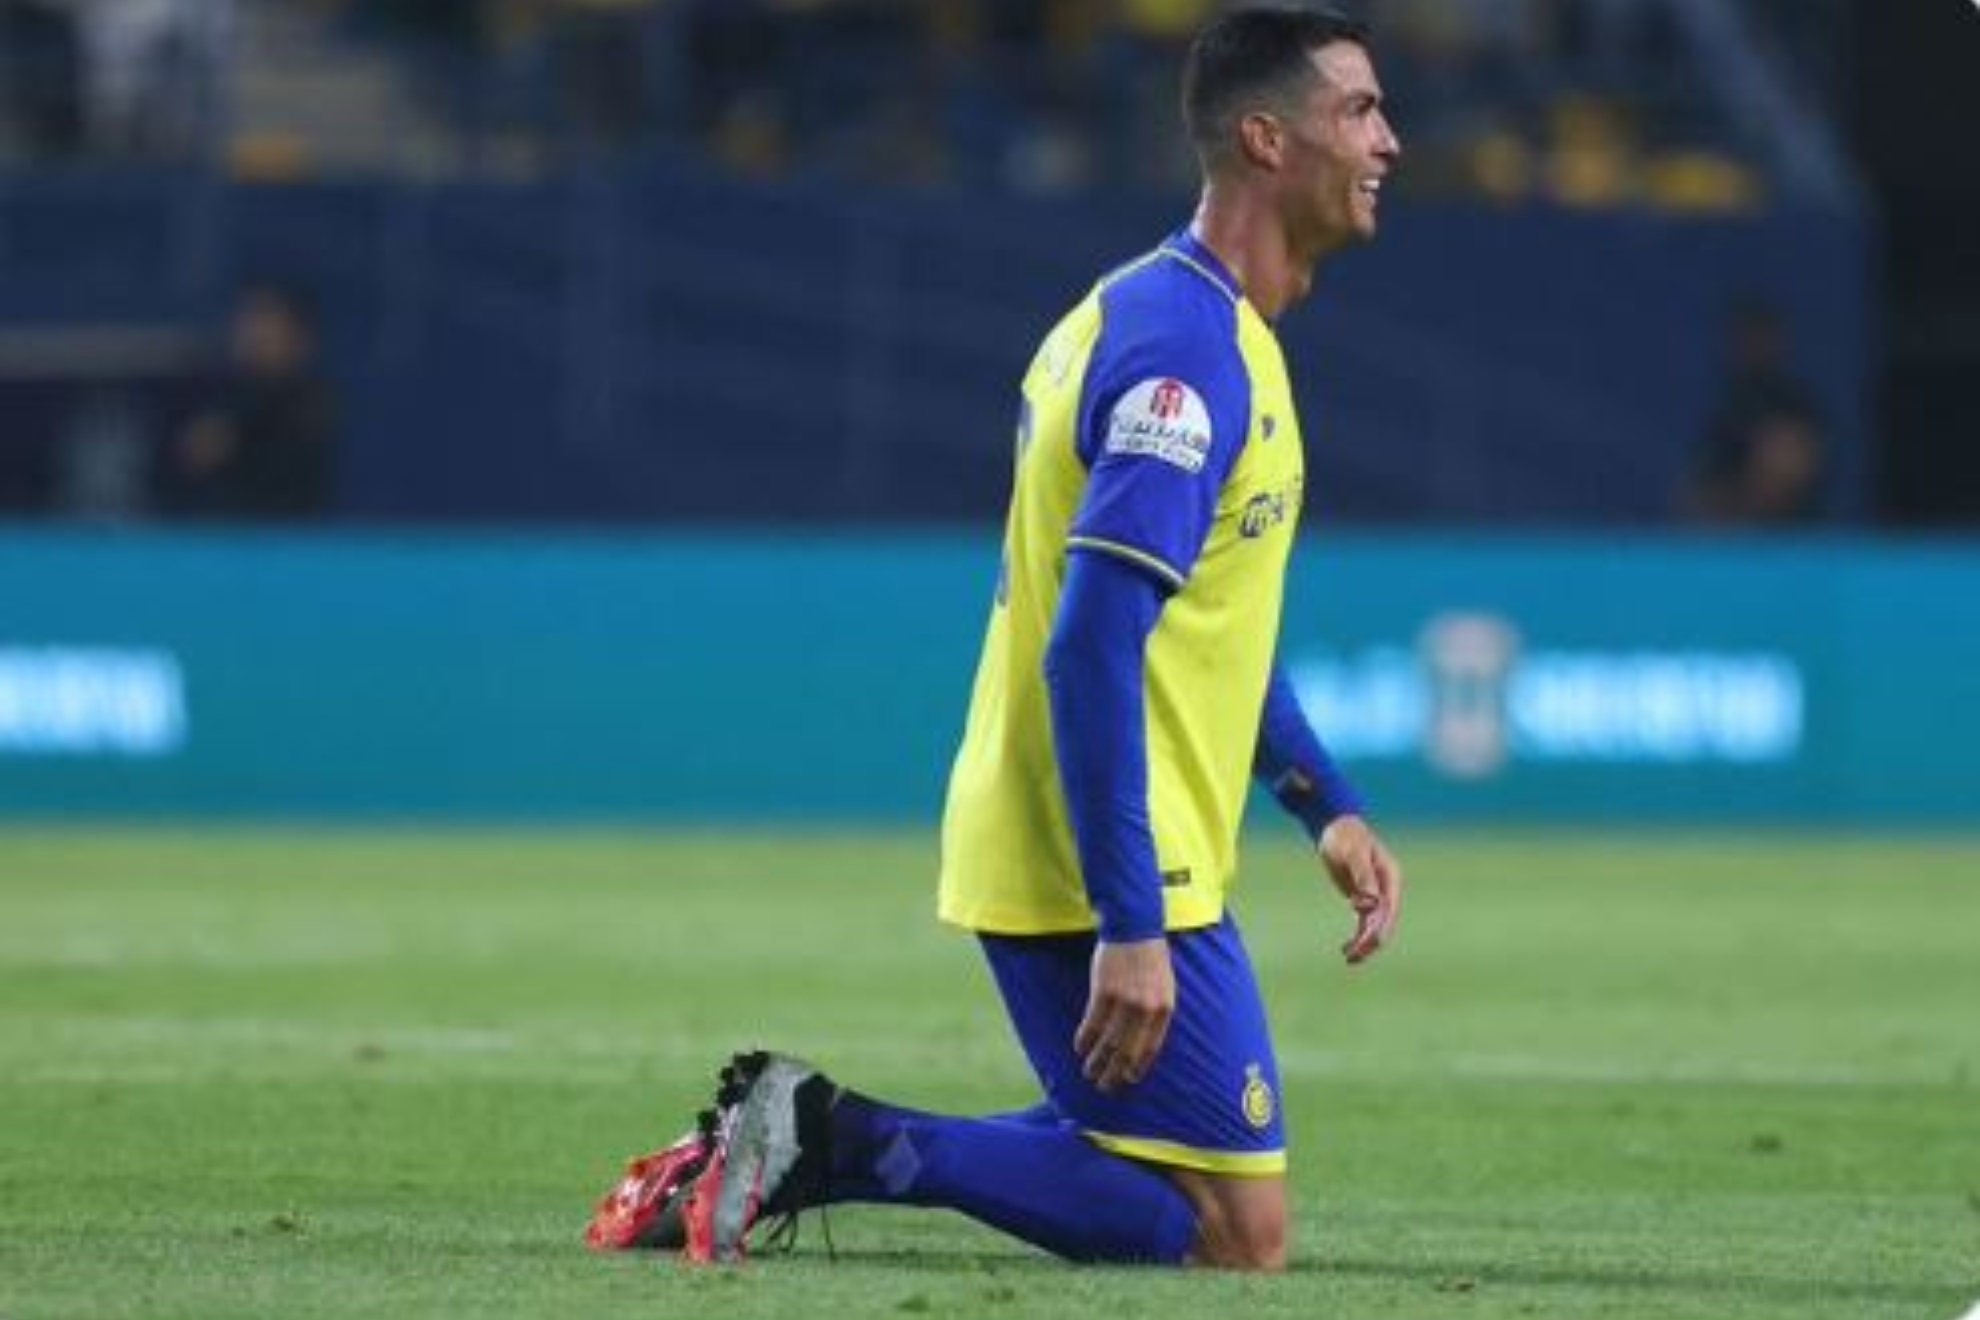 Cristiano Ronaldo culmina la remontada de Al Nassr con un latigazo... y sigue soando con la liga